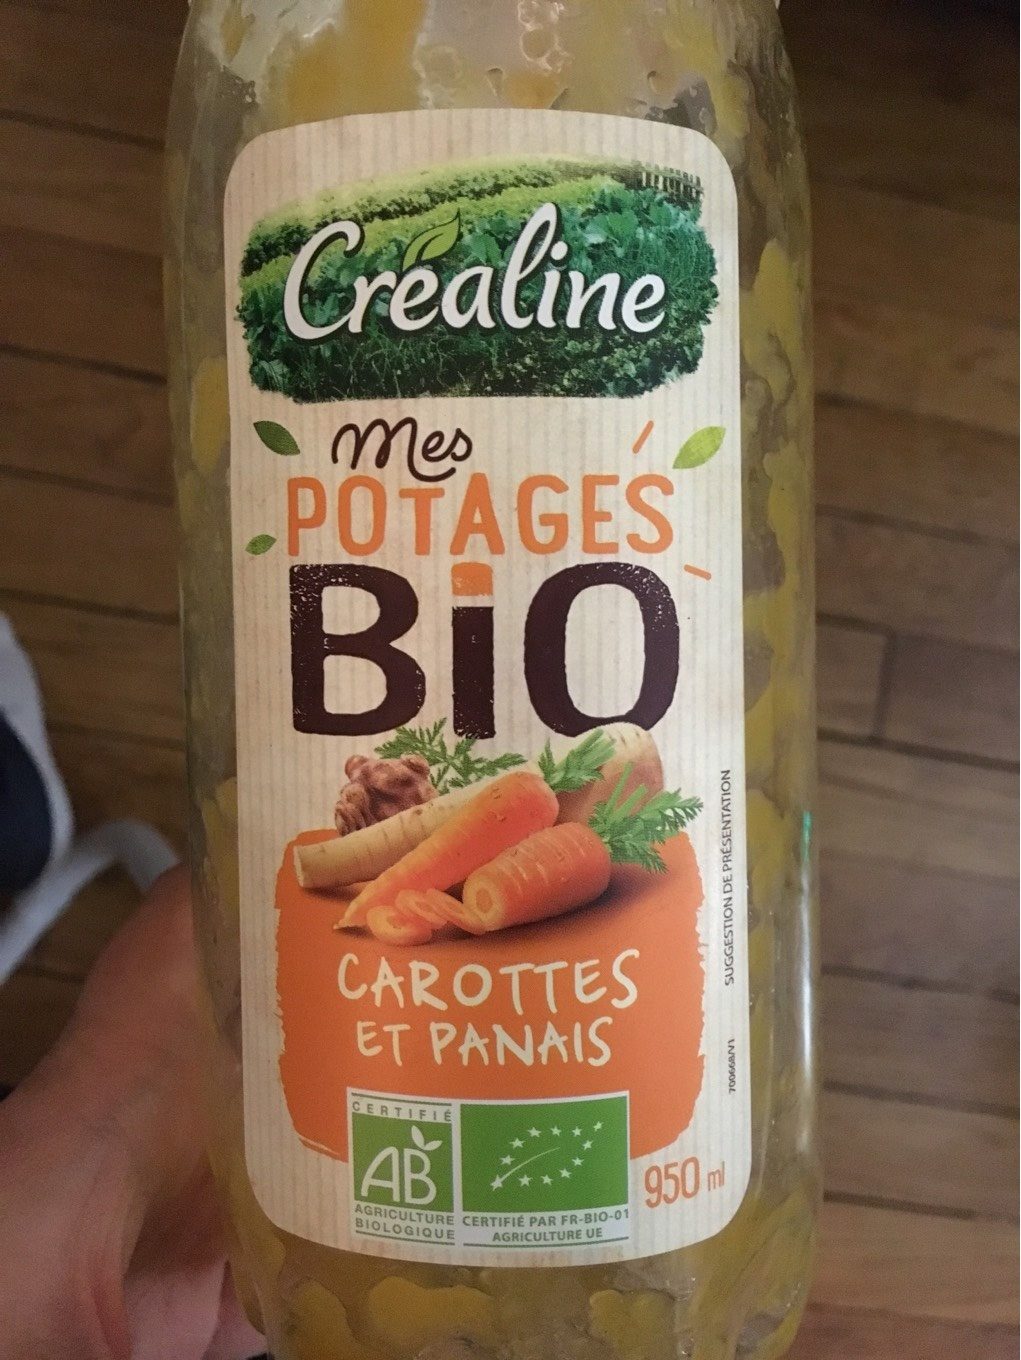 Mes potages bio carottes et panais - Producto - fr